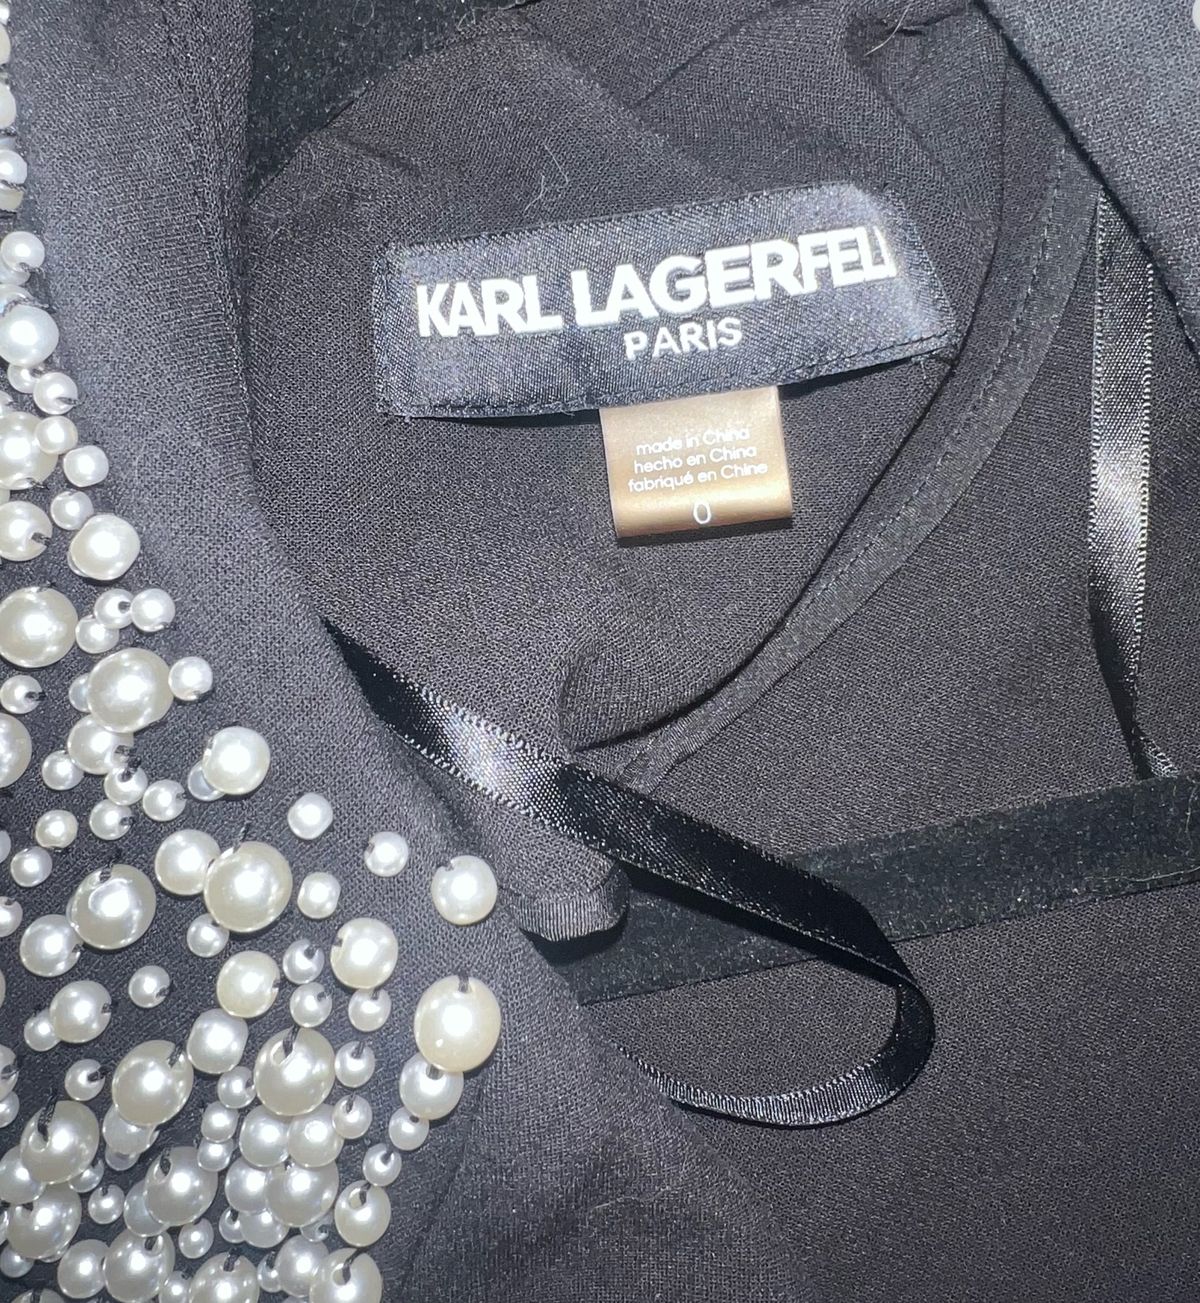 Karl Lagerfeld Paris Size 0 Blazer Black Cocktail Dress on Queenly